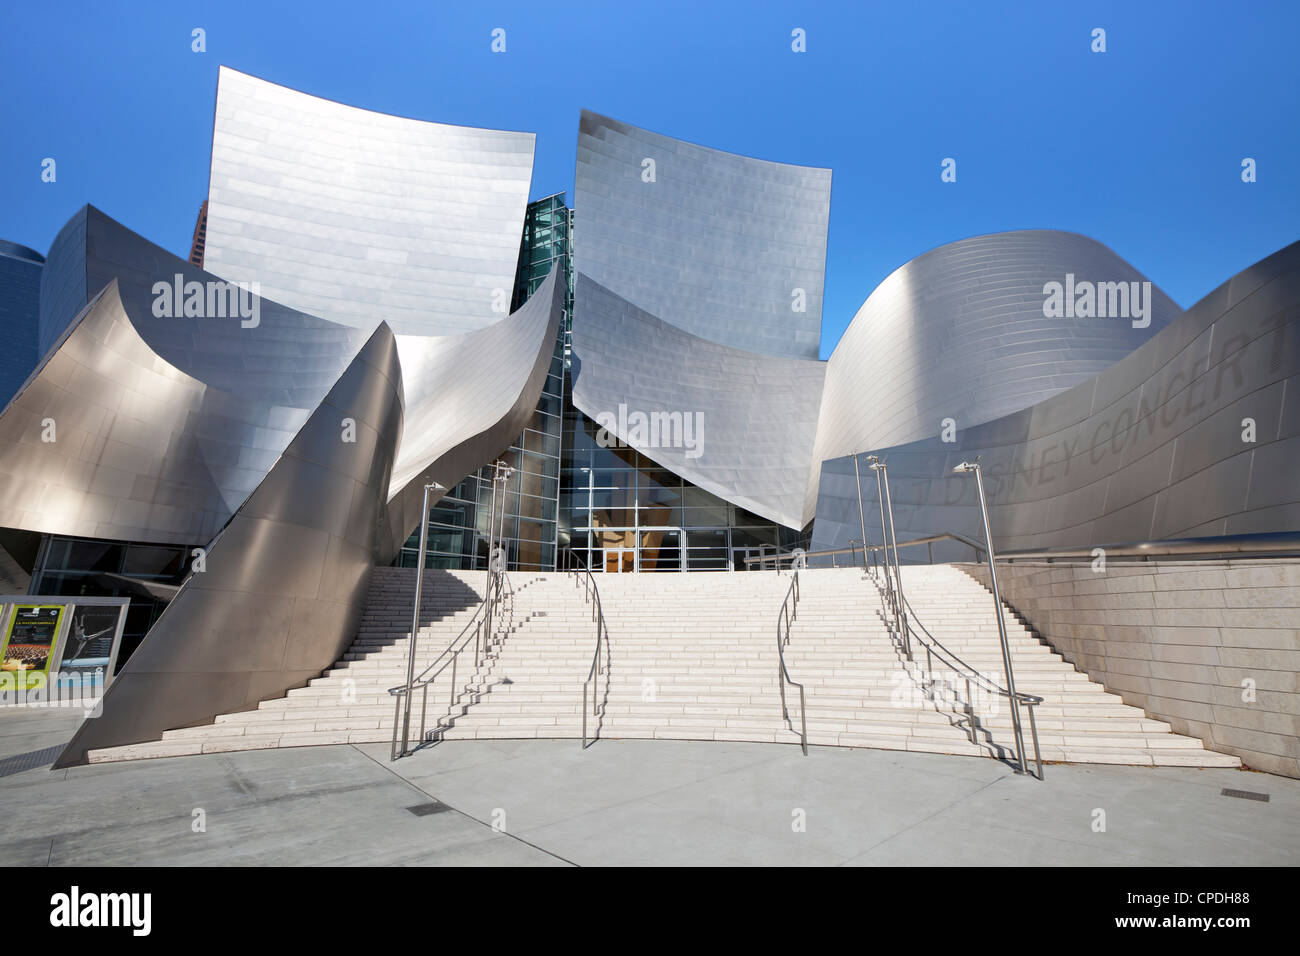 Walt Disney Concert Hall, Los Angeles, Californie, États-Unis d'Amérique, Amérique du Nord Banque D'Images